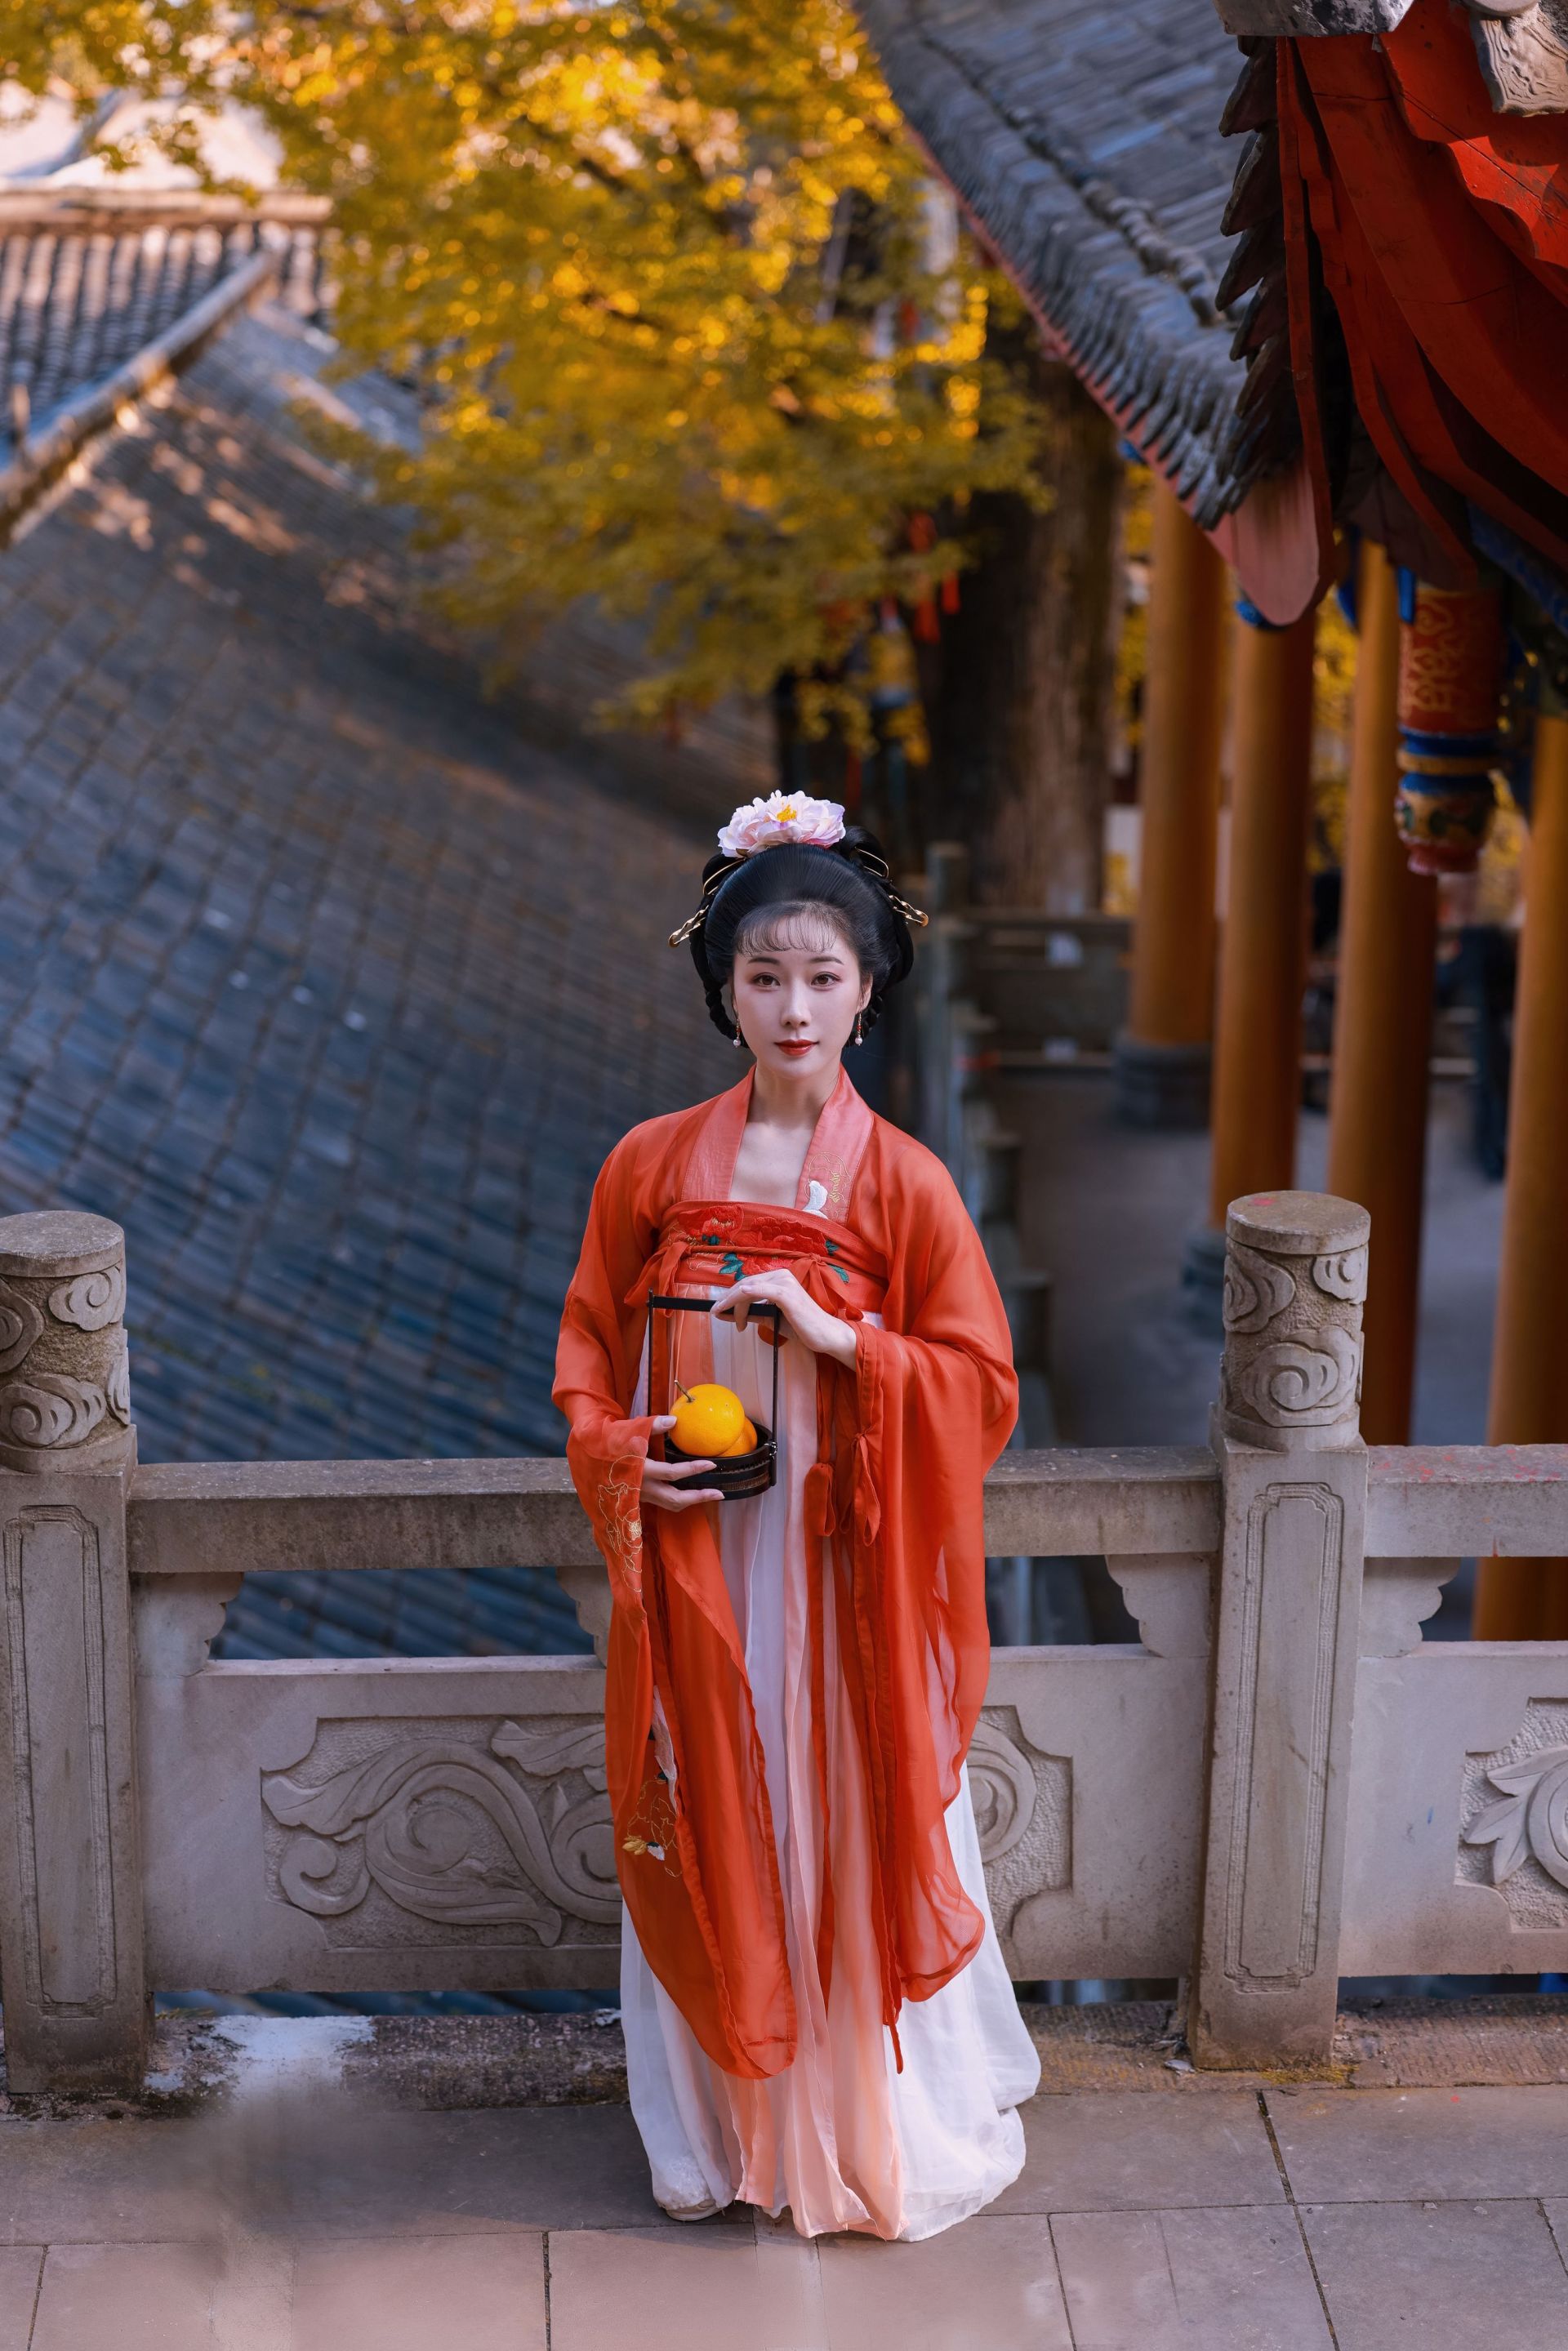 银杏 漂亮 优美 意境 艺术 中国风 古装 银杏树 美人写真